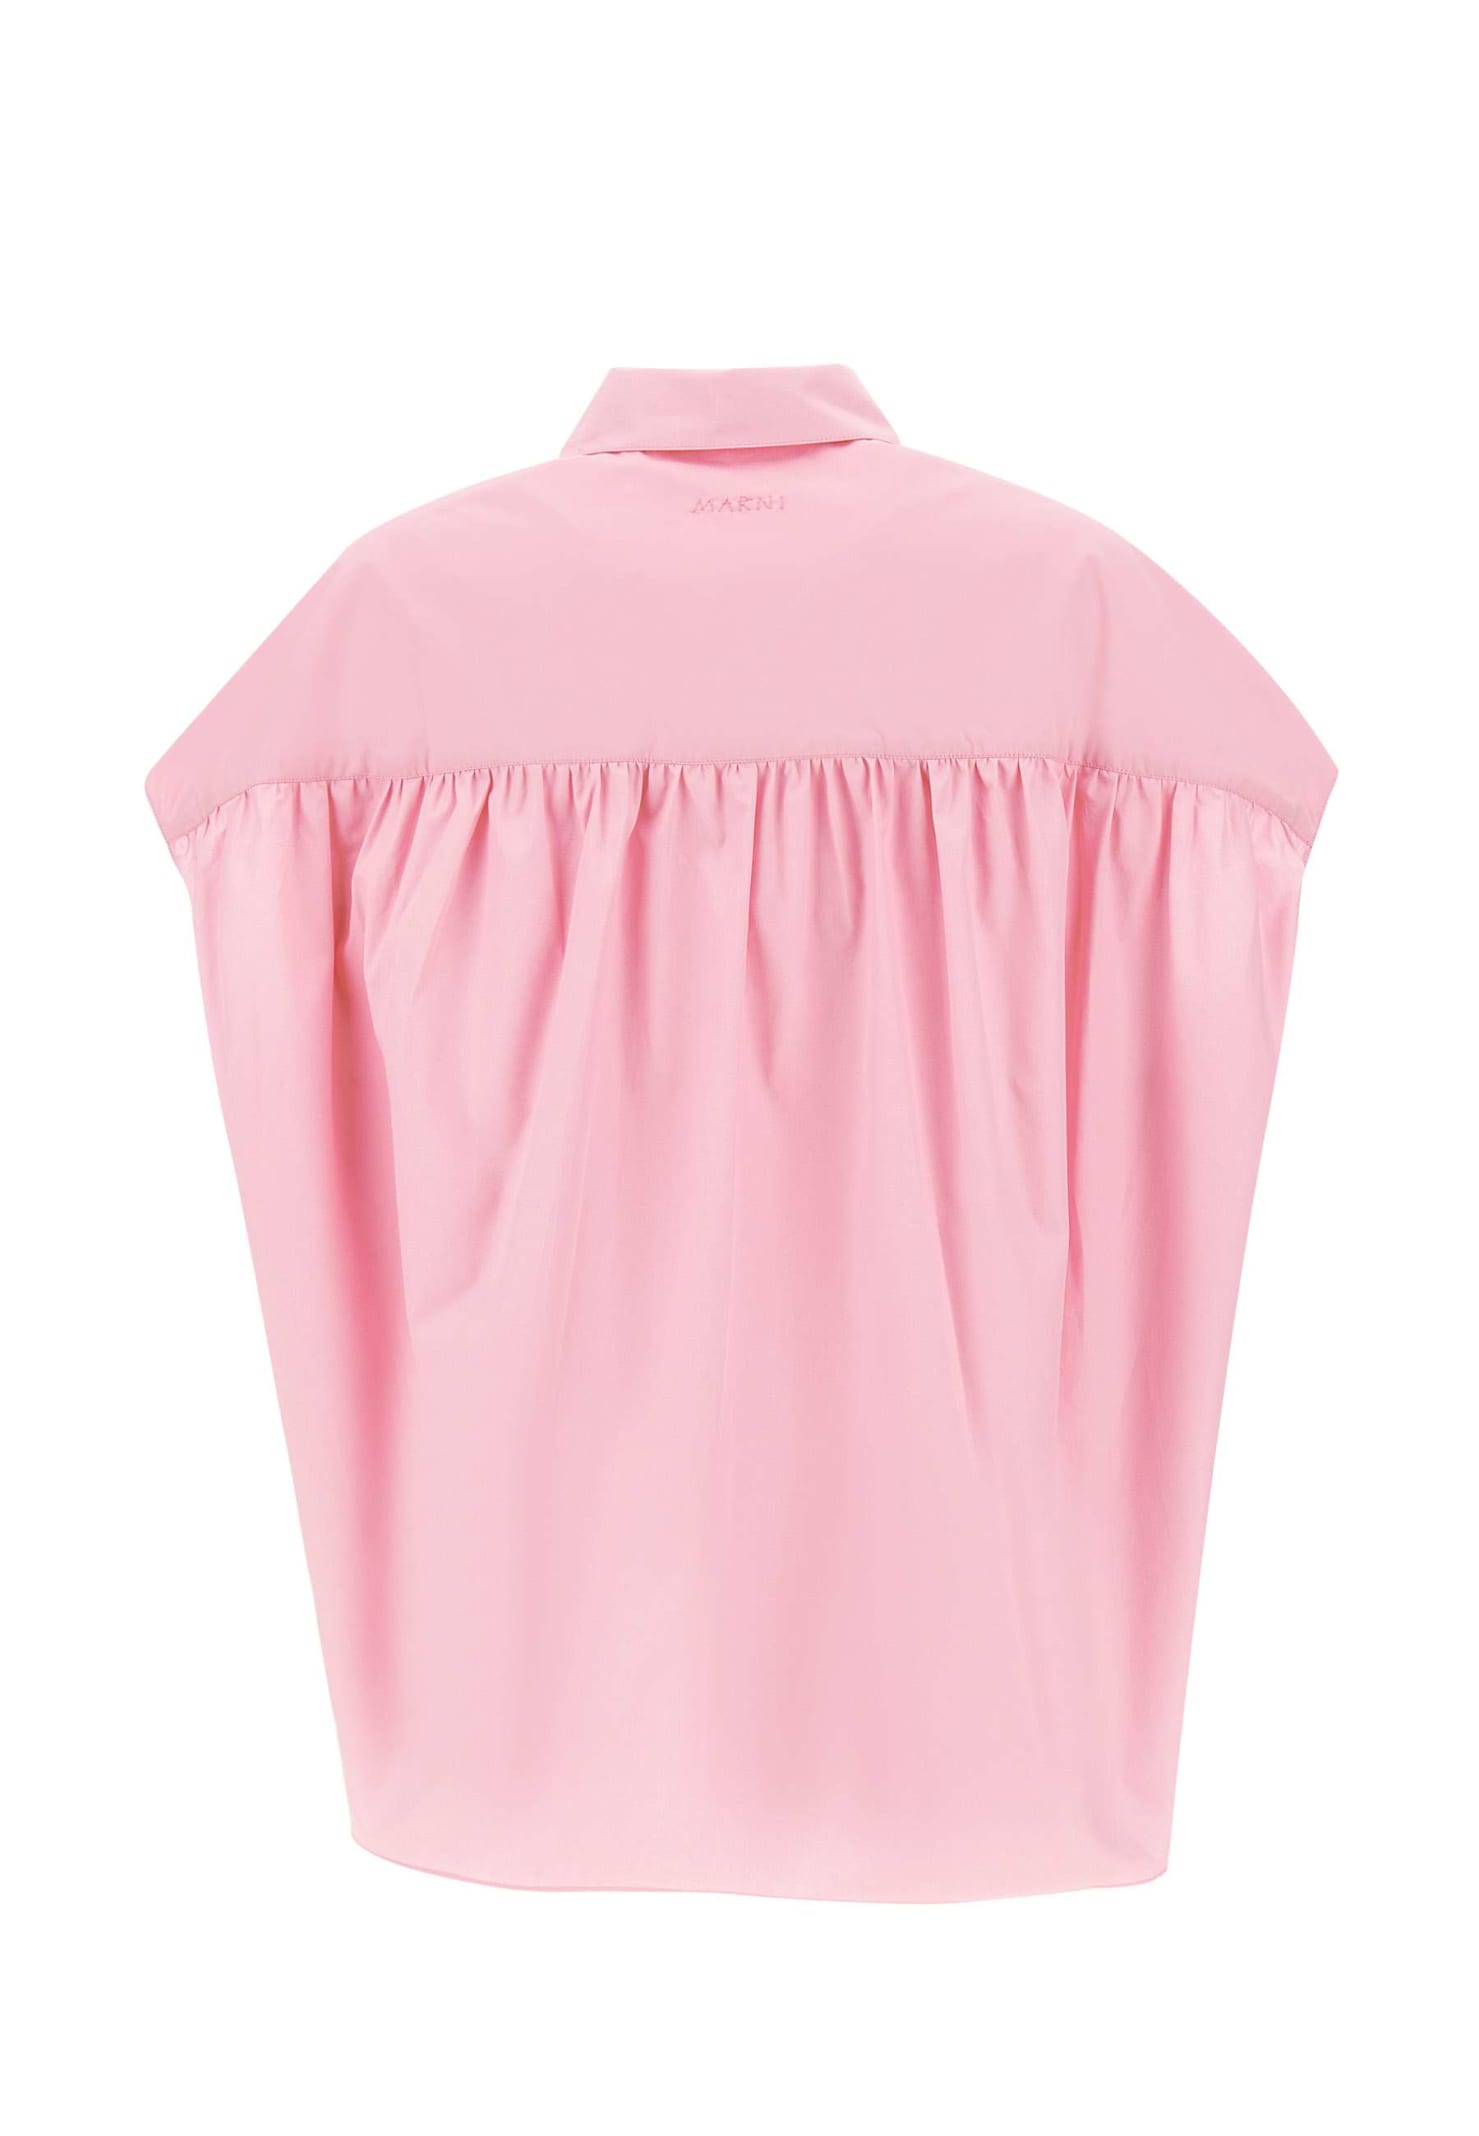 Shop Marni Organic Cotton Poplin Shirt In Pink